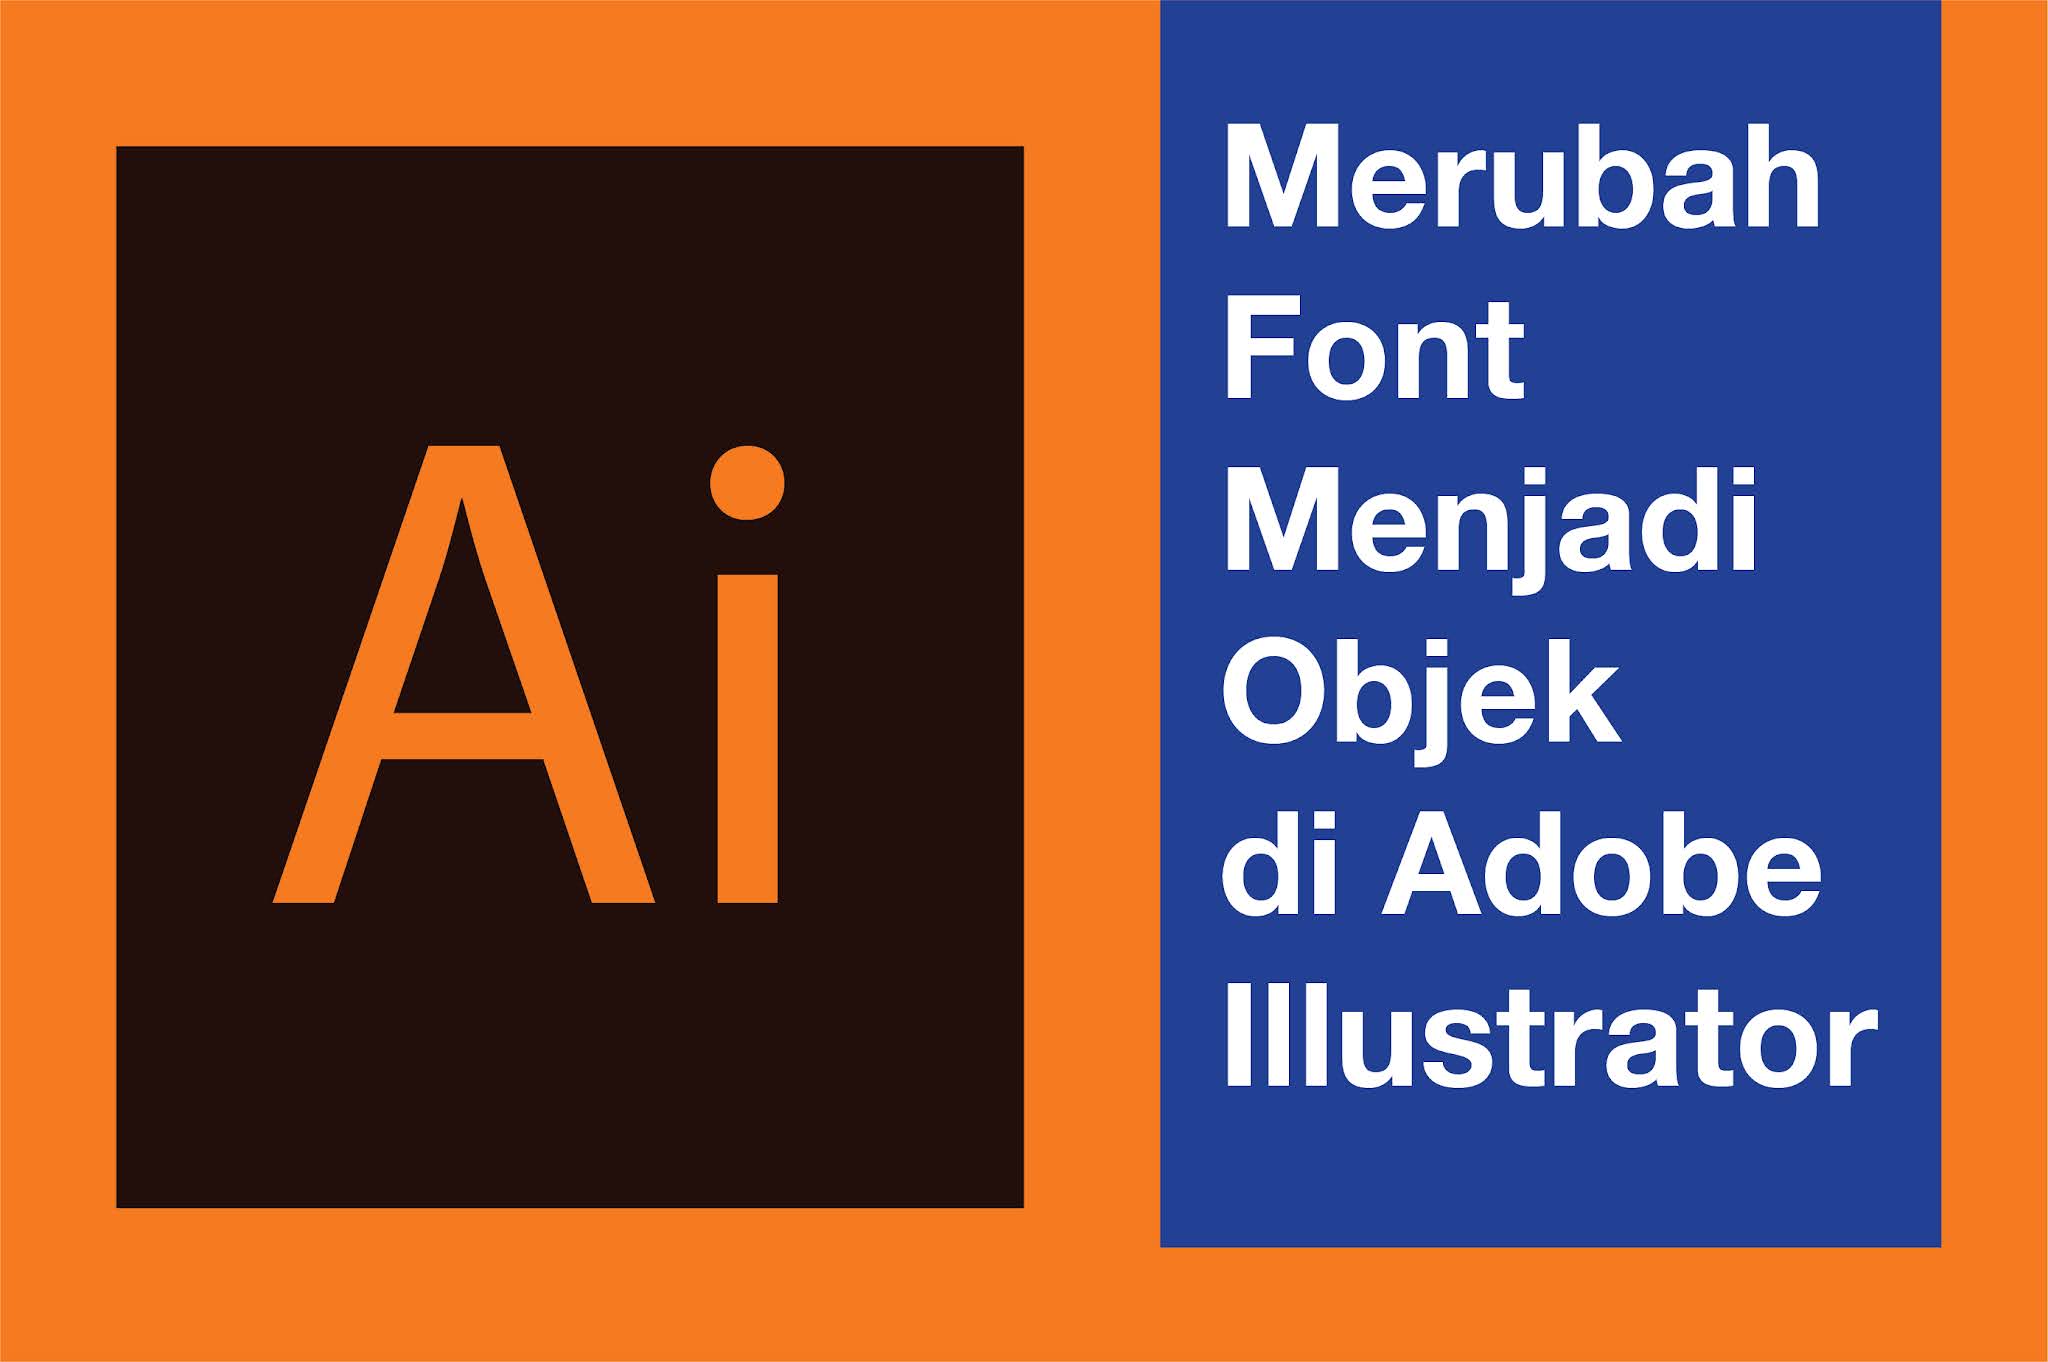 Merubah Font Menjadi Objek  di  Adobe Illustrator